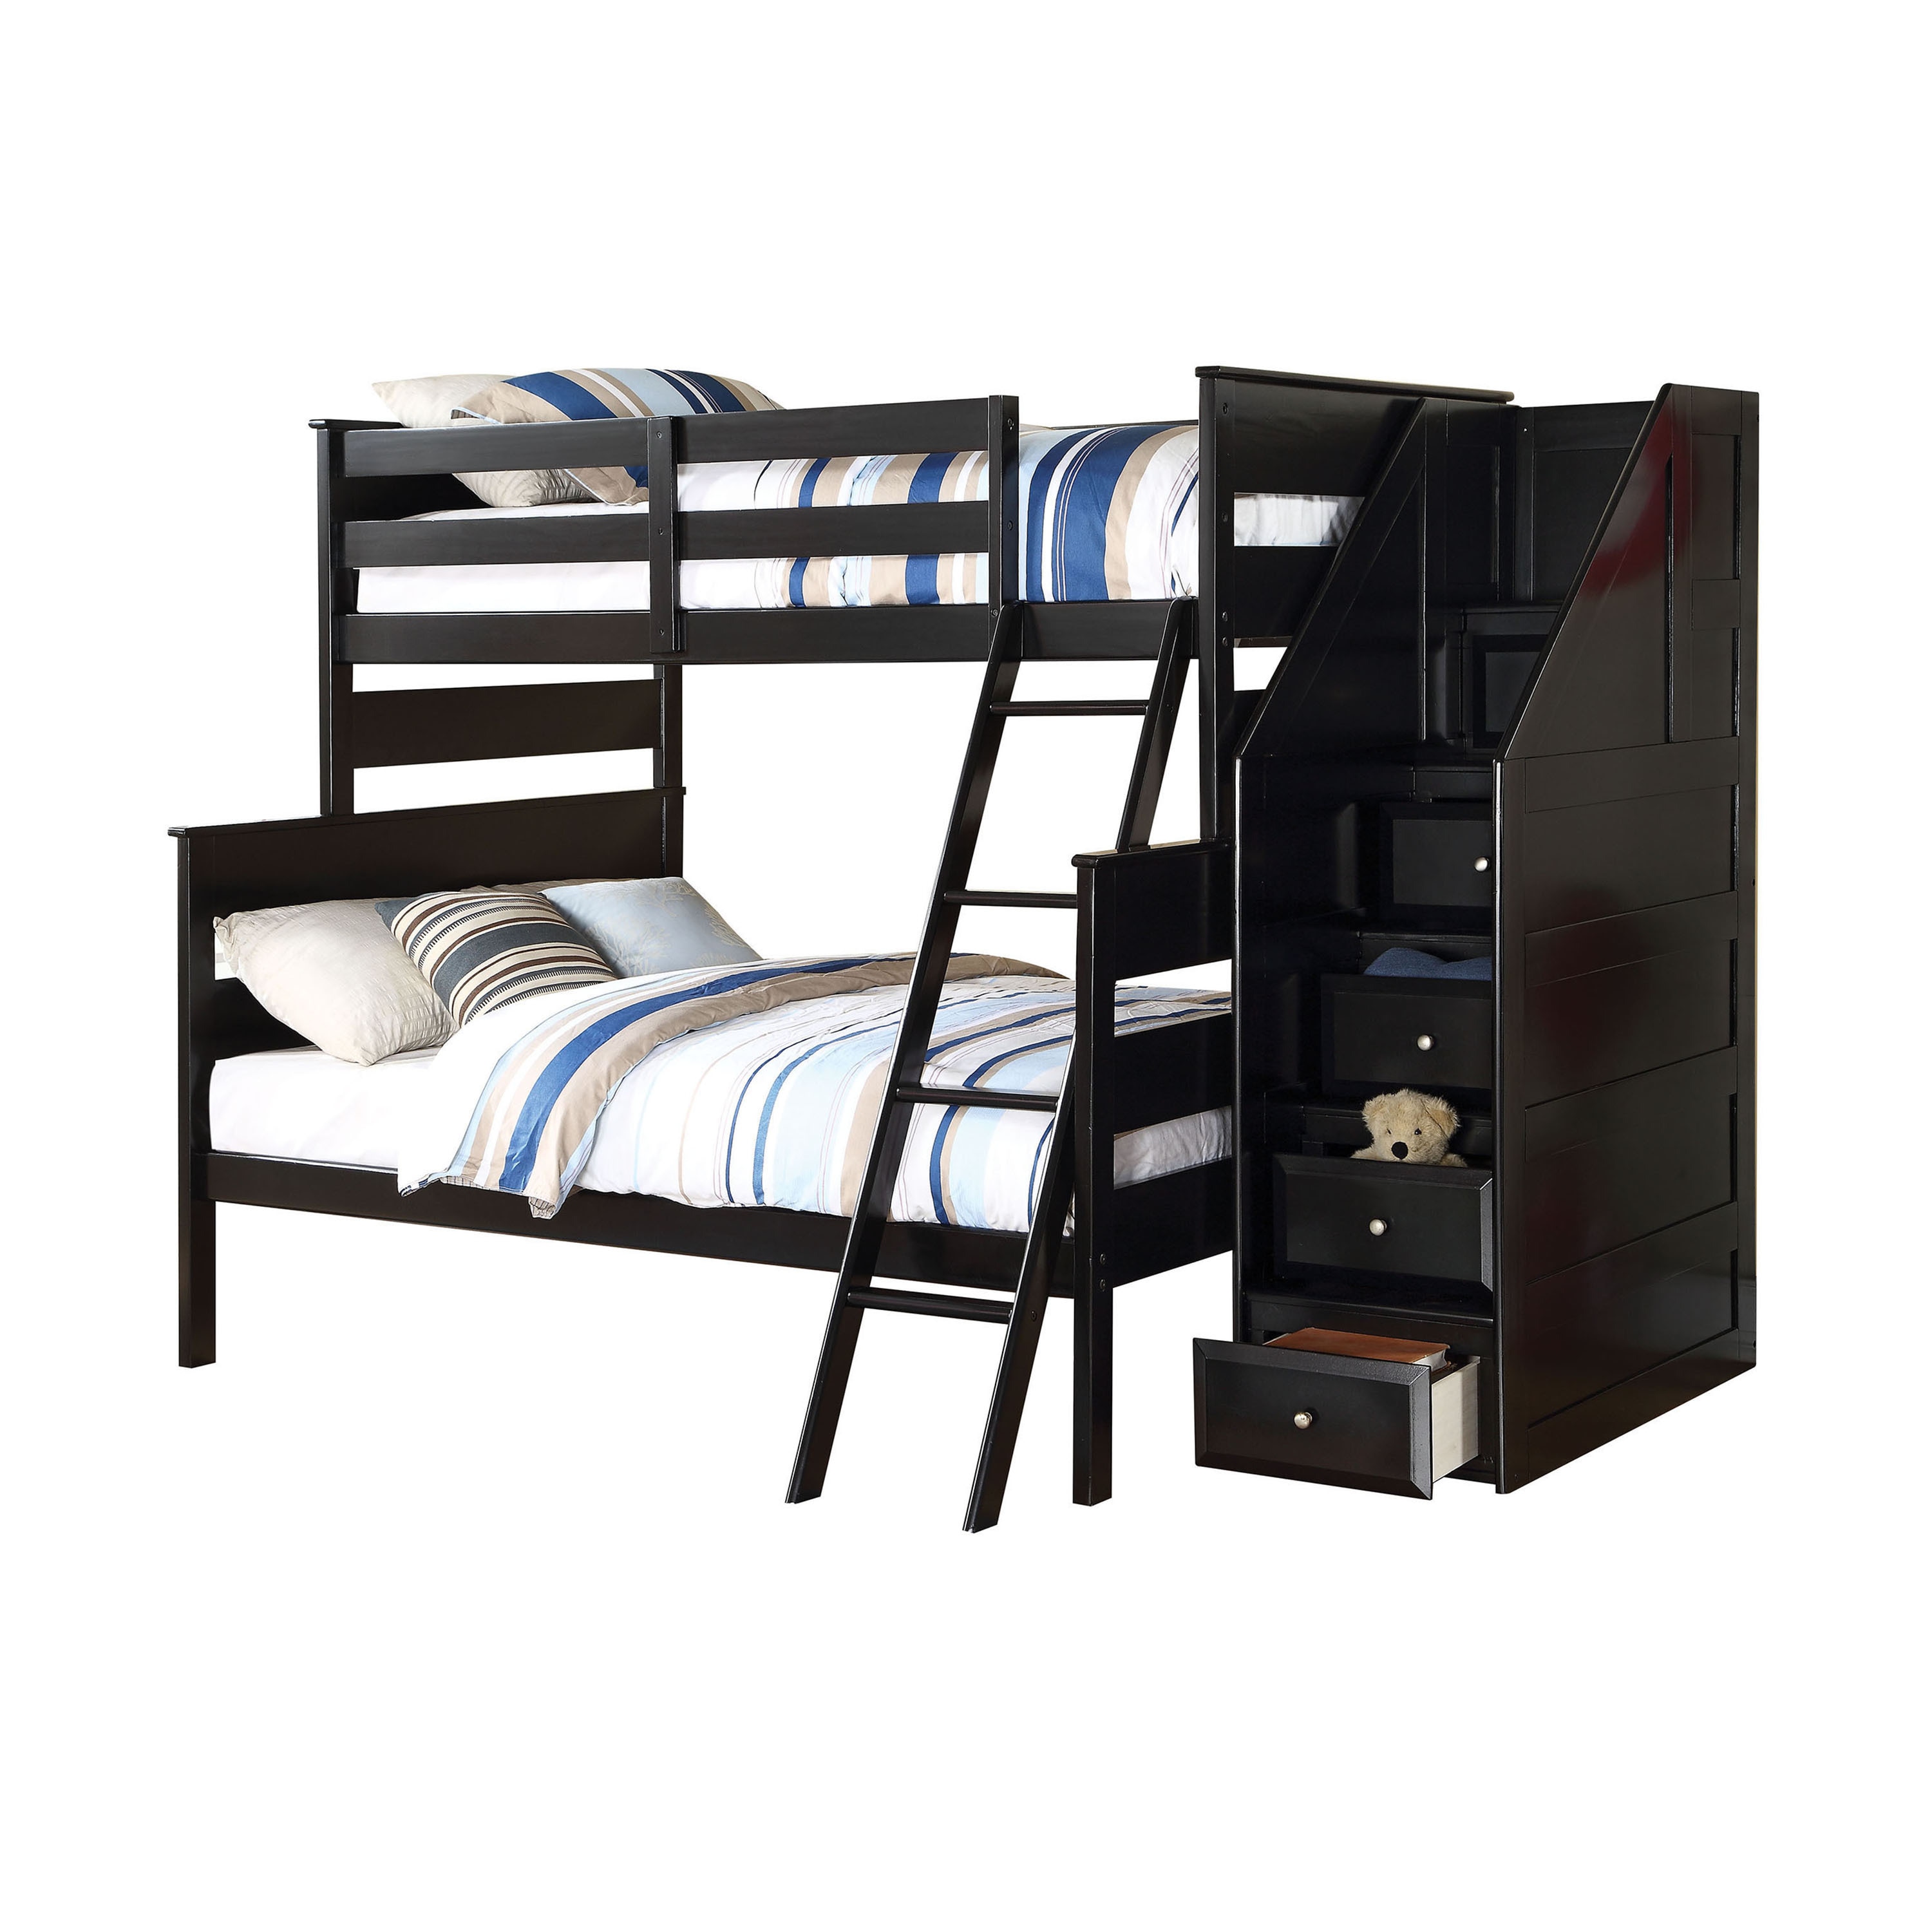 aspace bunk bed